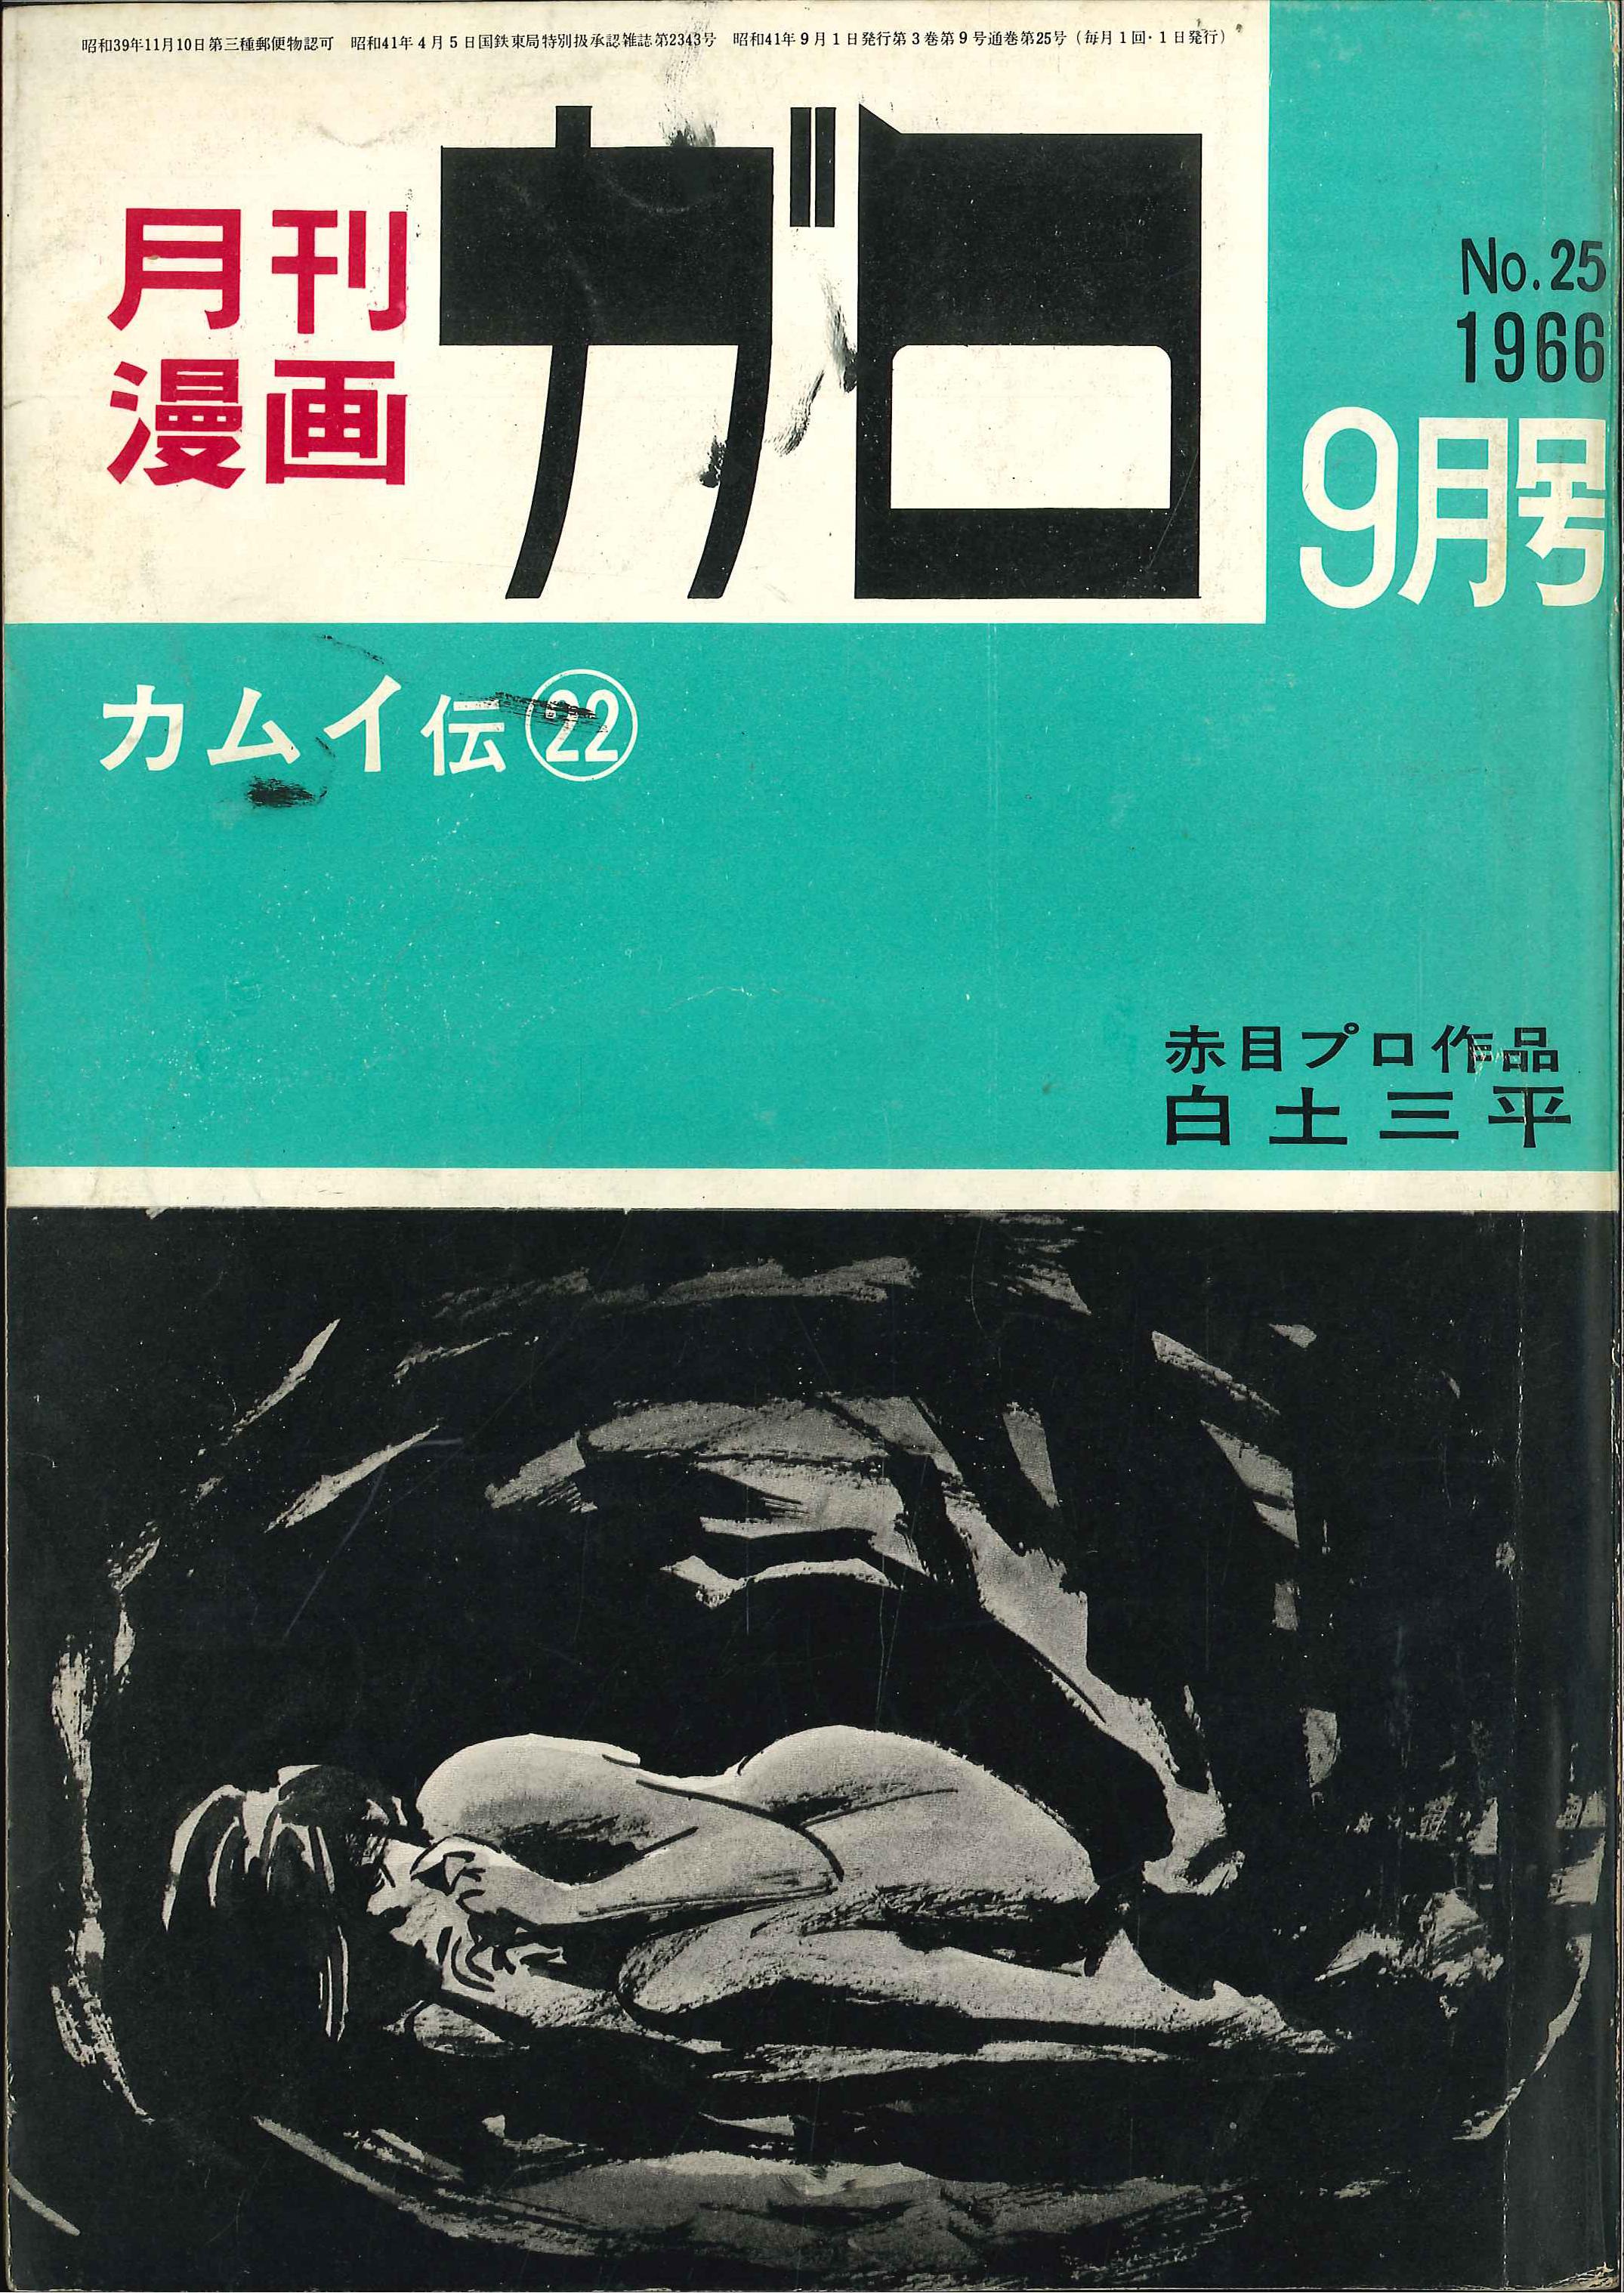 青林堂 1966年 昭和41年 の漫画雑誌 月刊ガロ1966年 昭和41年 09月号 6609 まんだらけ Mandarake